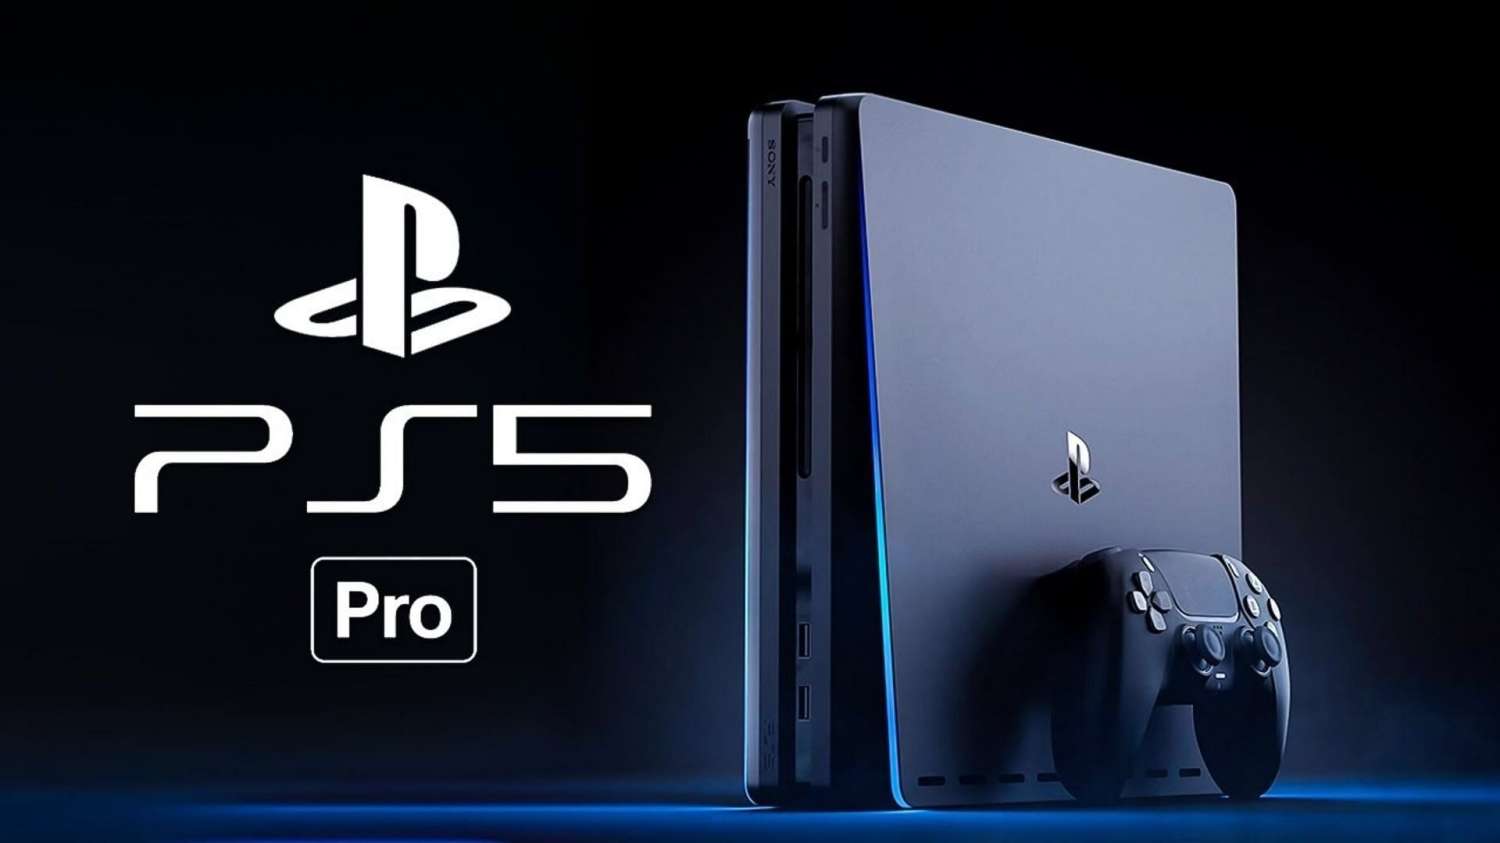 Video chứa thông tin leak về tựa PS5 Pro đã bị Sony gỡ xuống